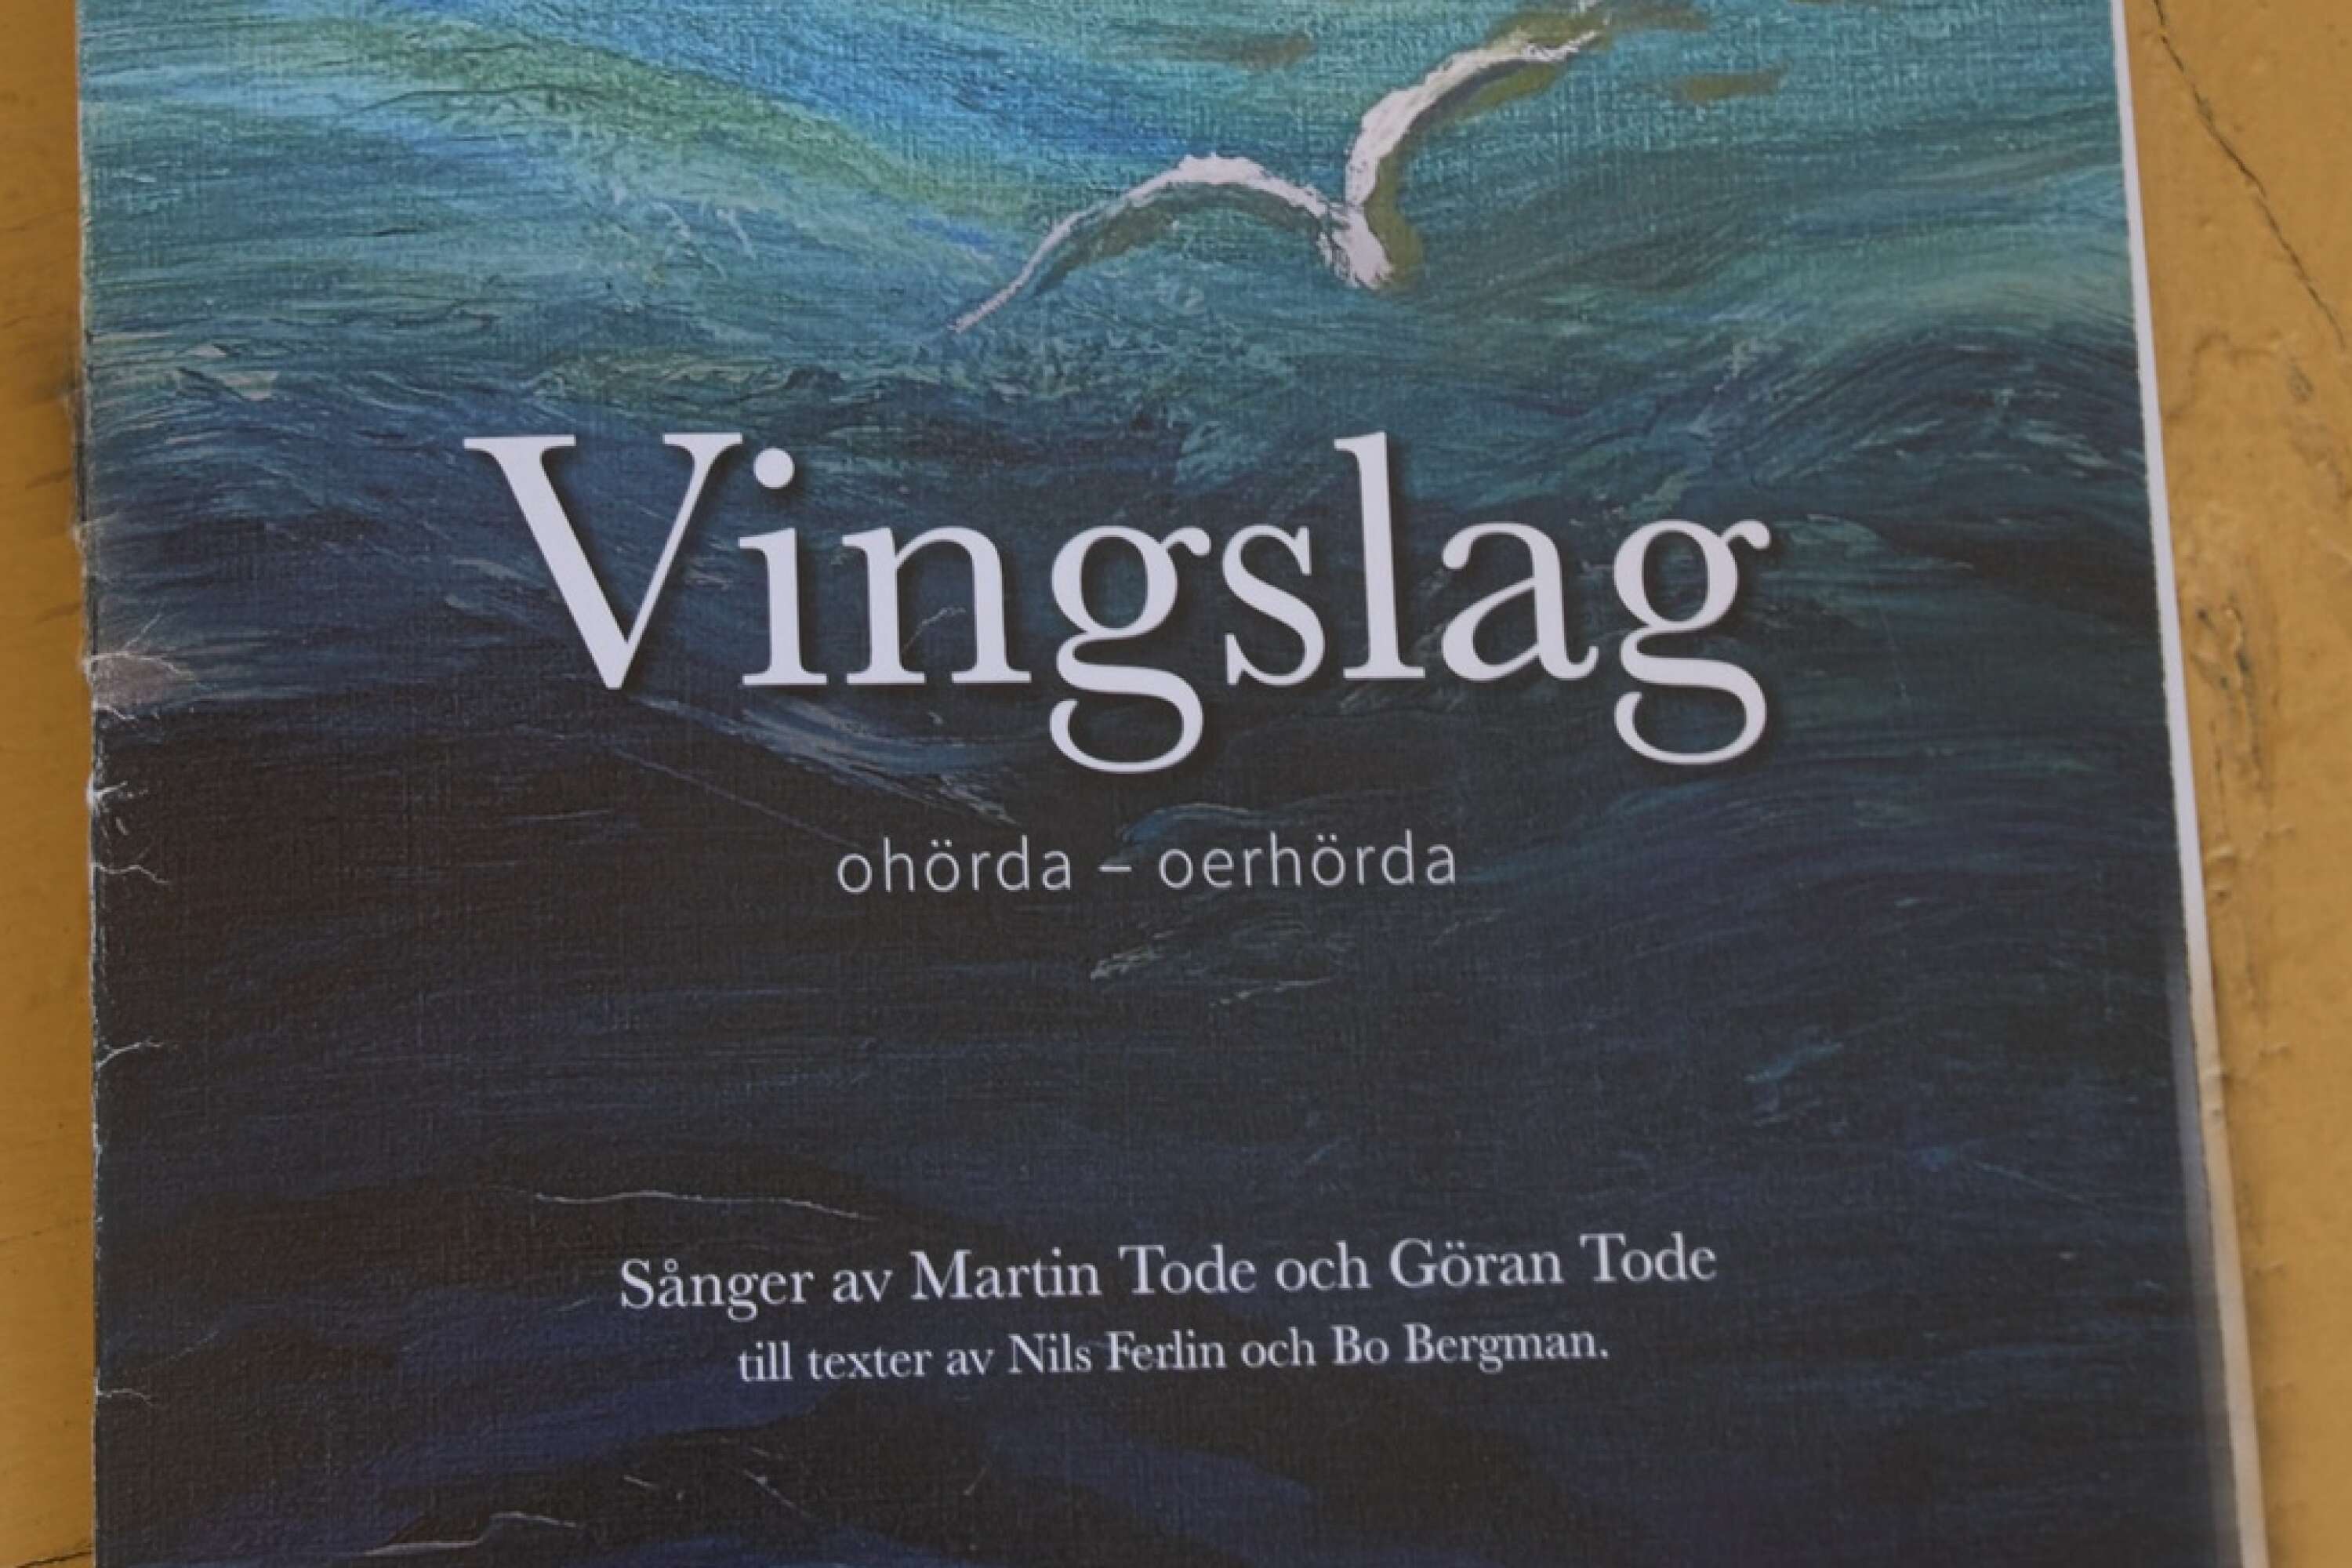 Ett första tummat provexemplar av sångboken <em id="emphasis-2f83a237b514dcf7f3bacd392ae9eb20">Vingslag</em>, med illustrationer av Henrik Allert.